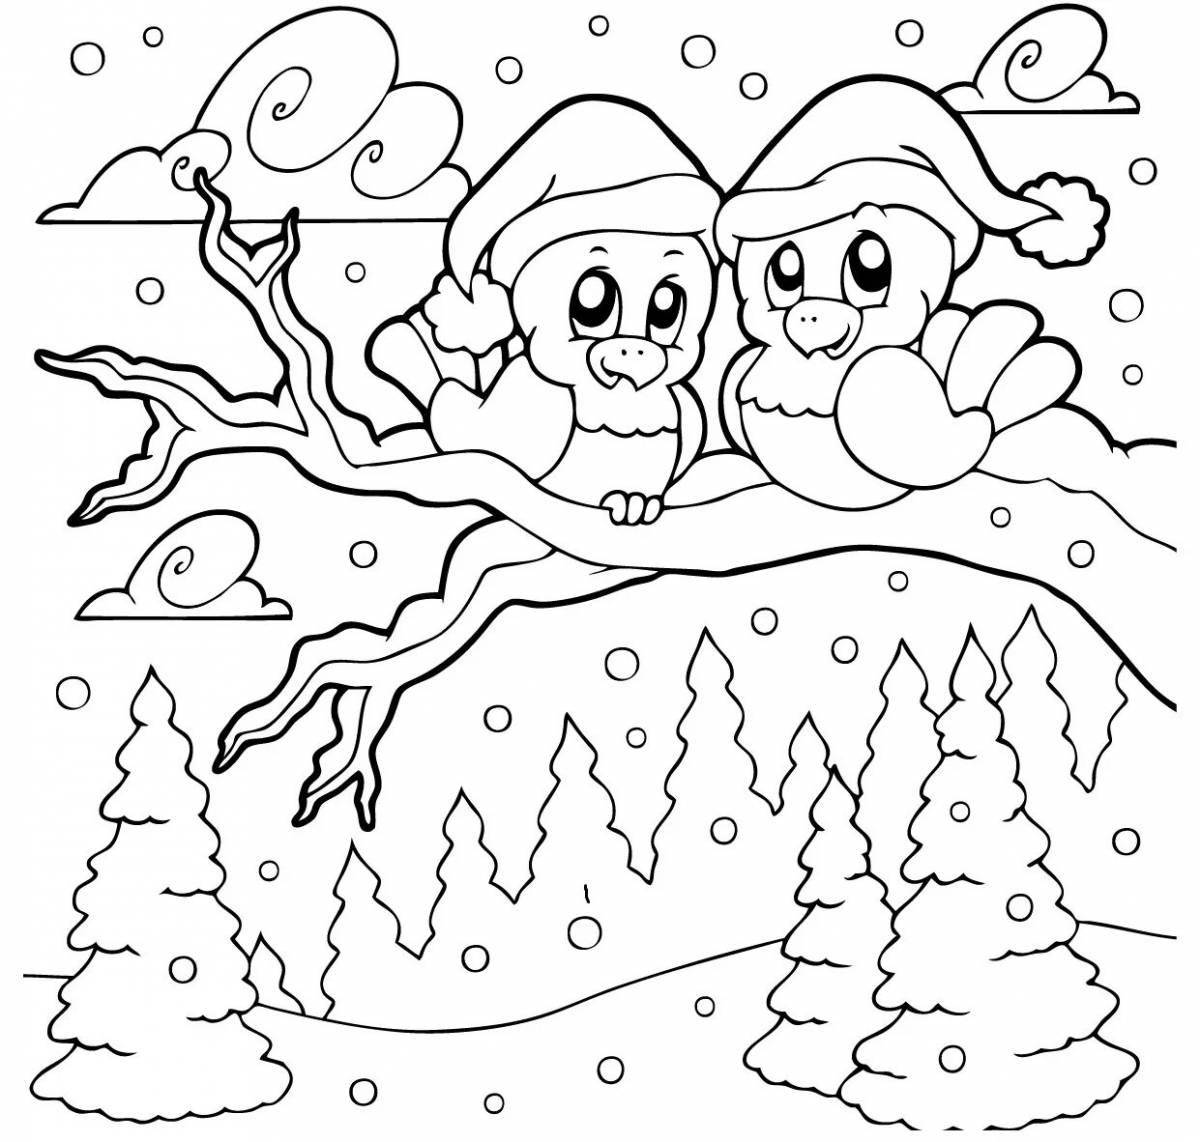 Радостный зимний пейзаж раскраска для детей 10 лет